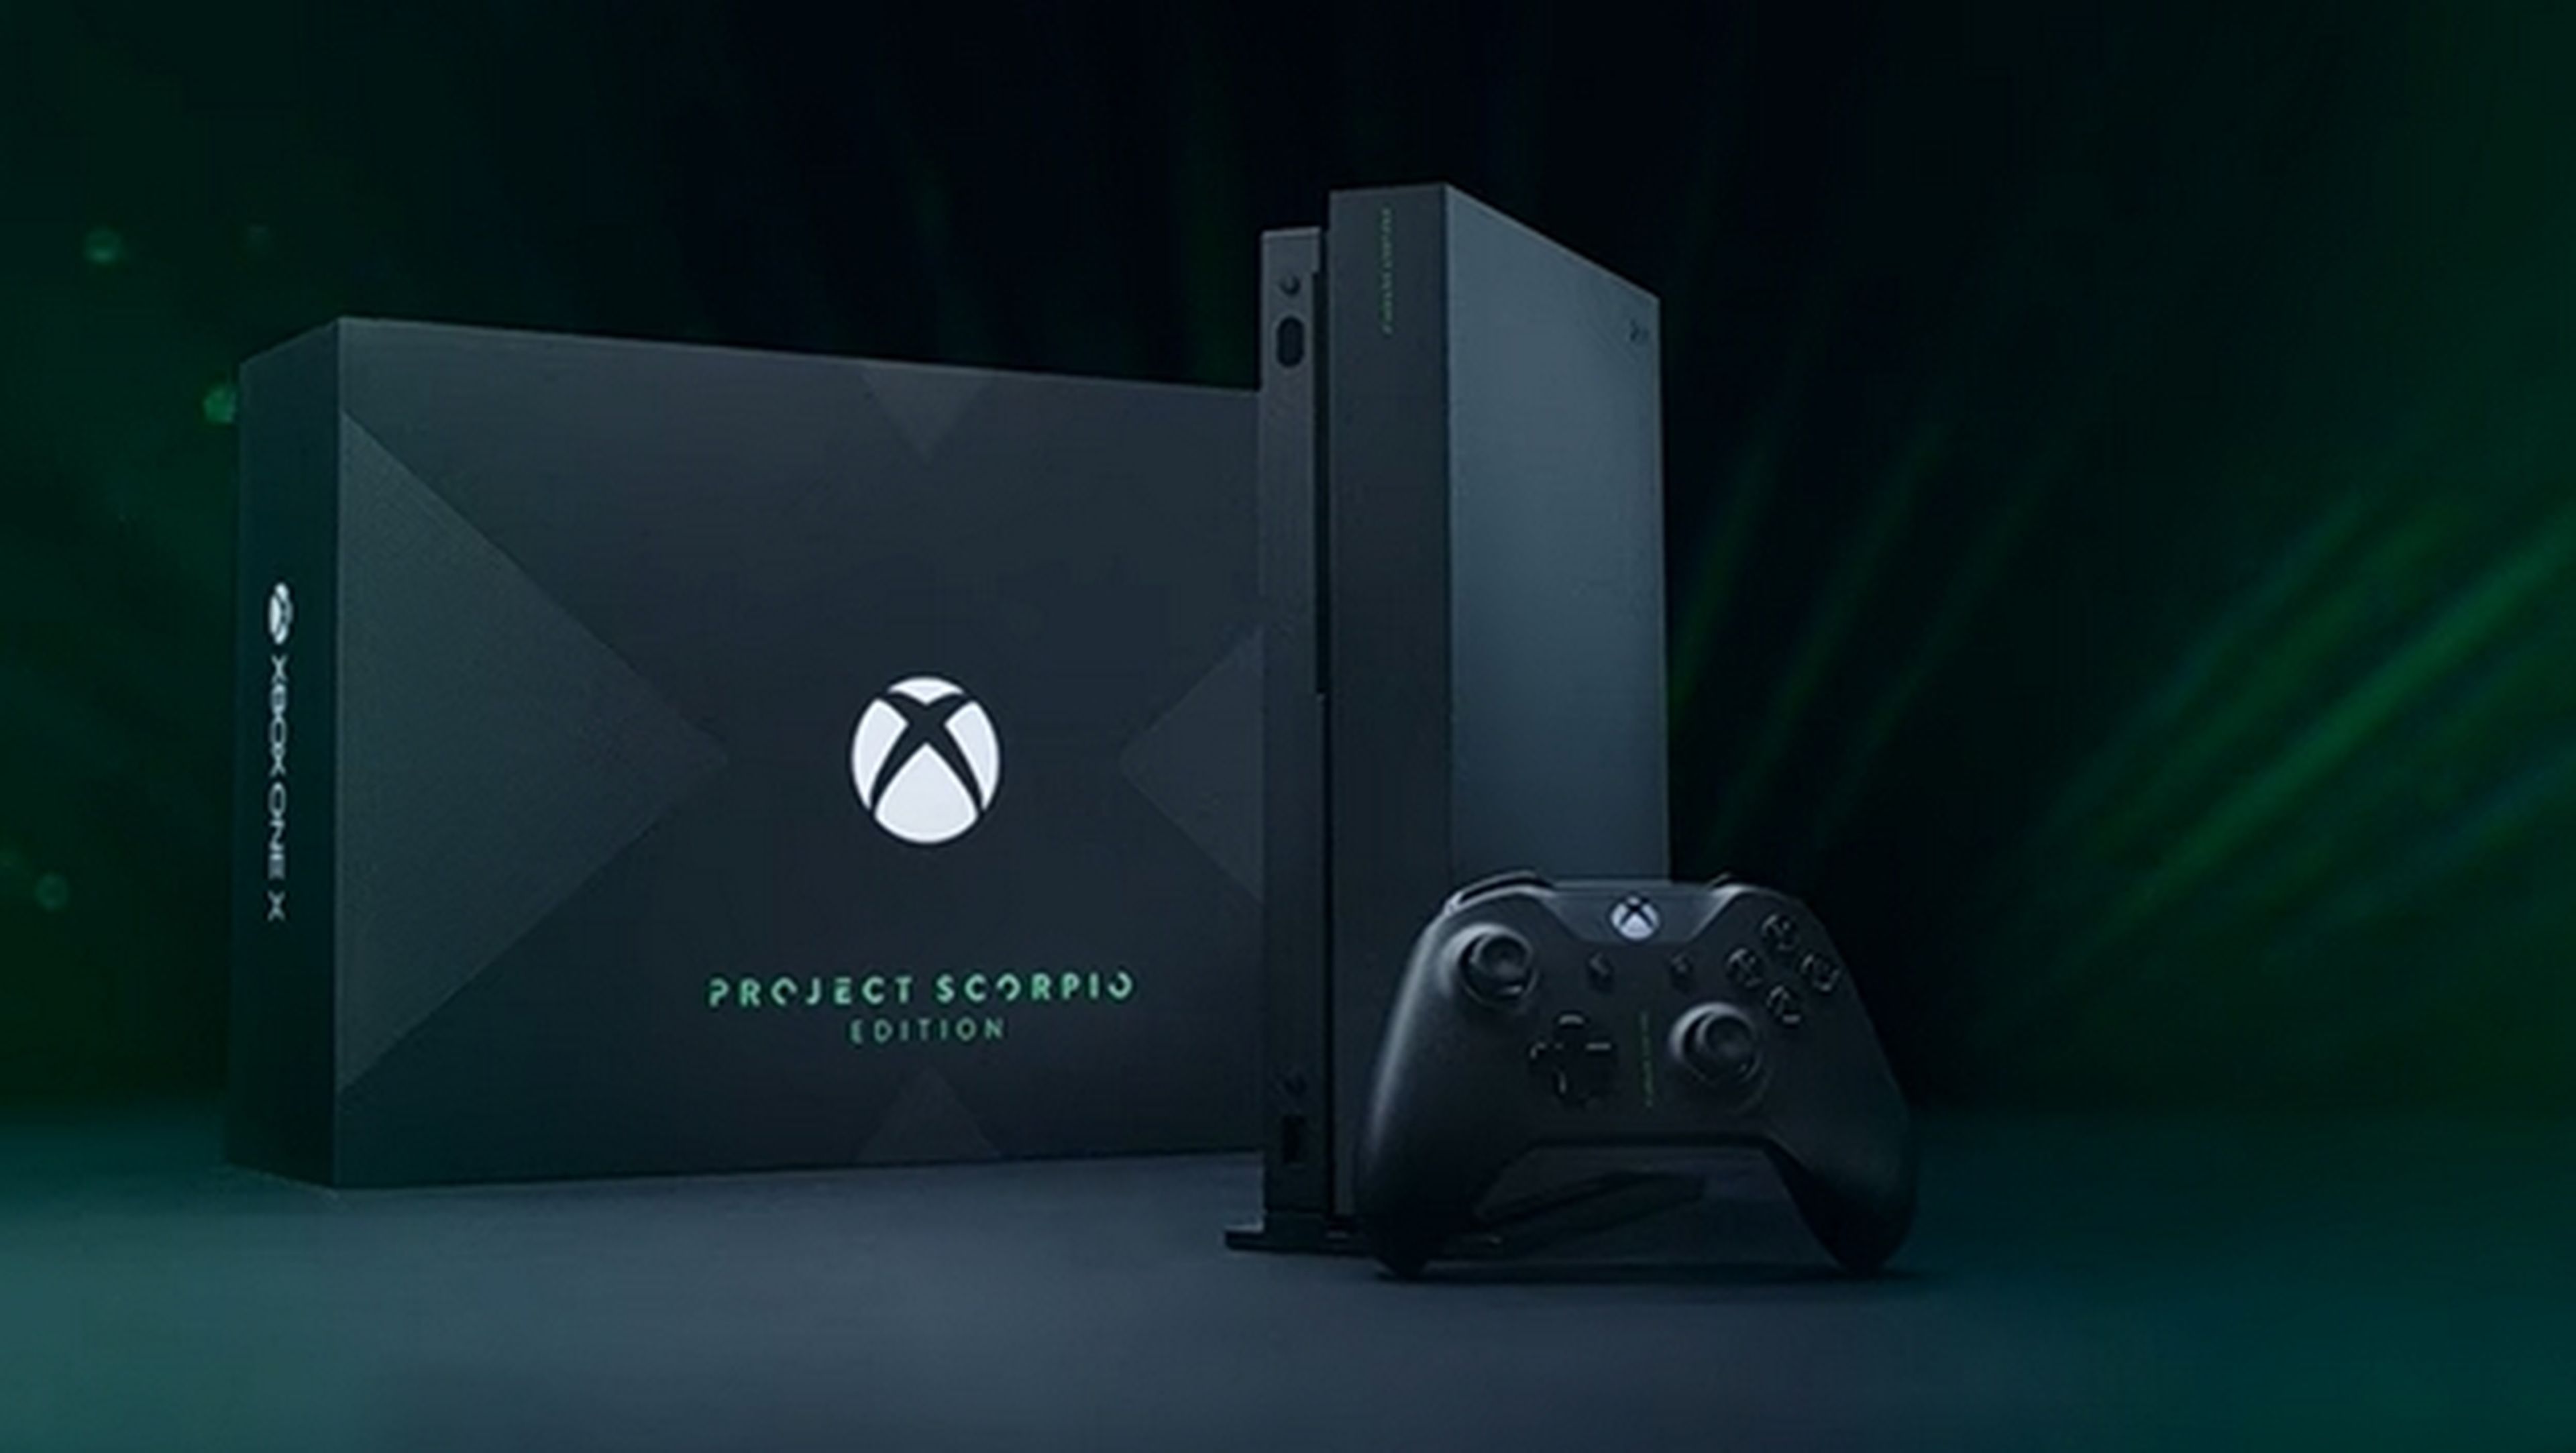 Novedades y unboxing de Xbox One X en Gamescom 2017